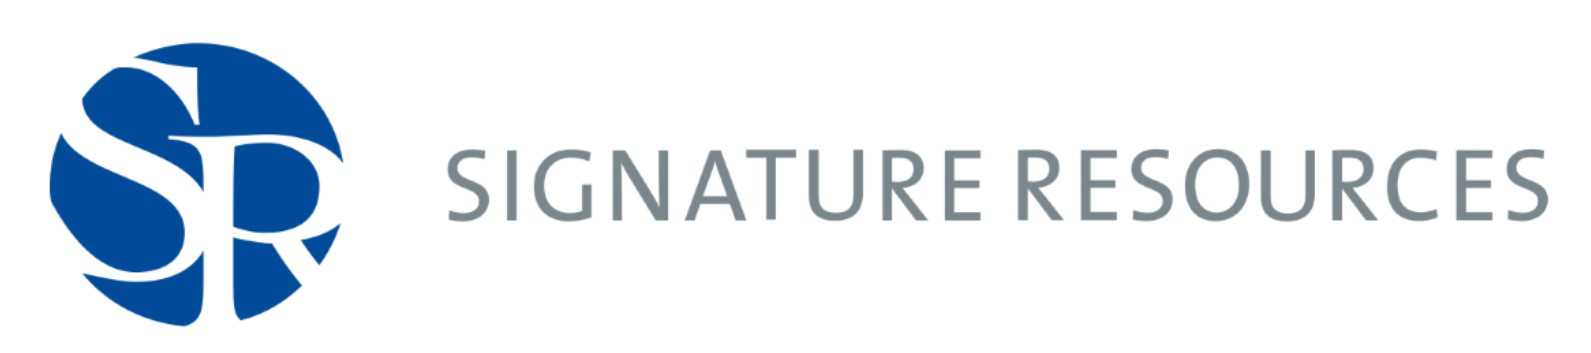 Signature Resources logo